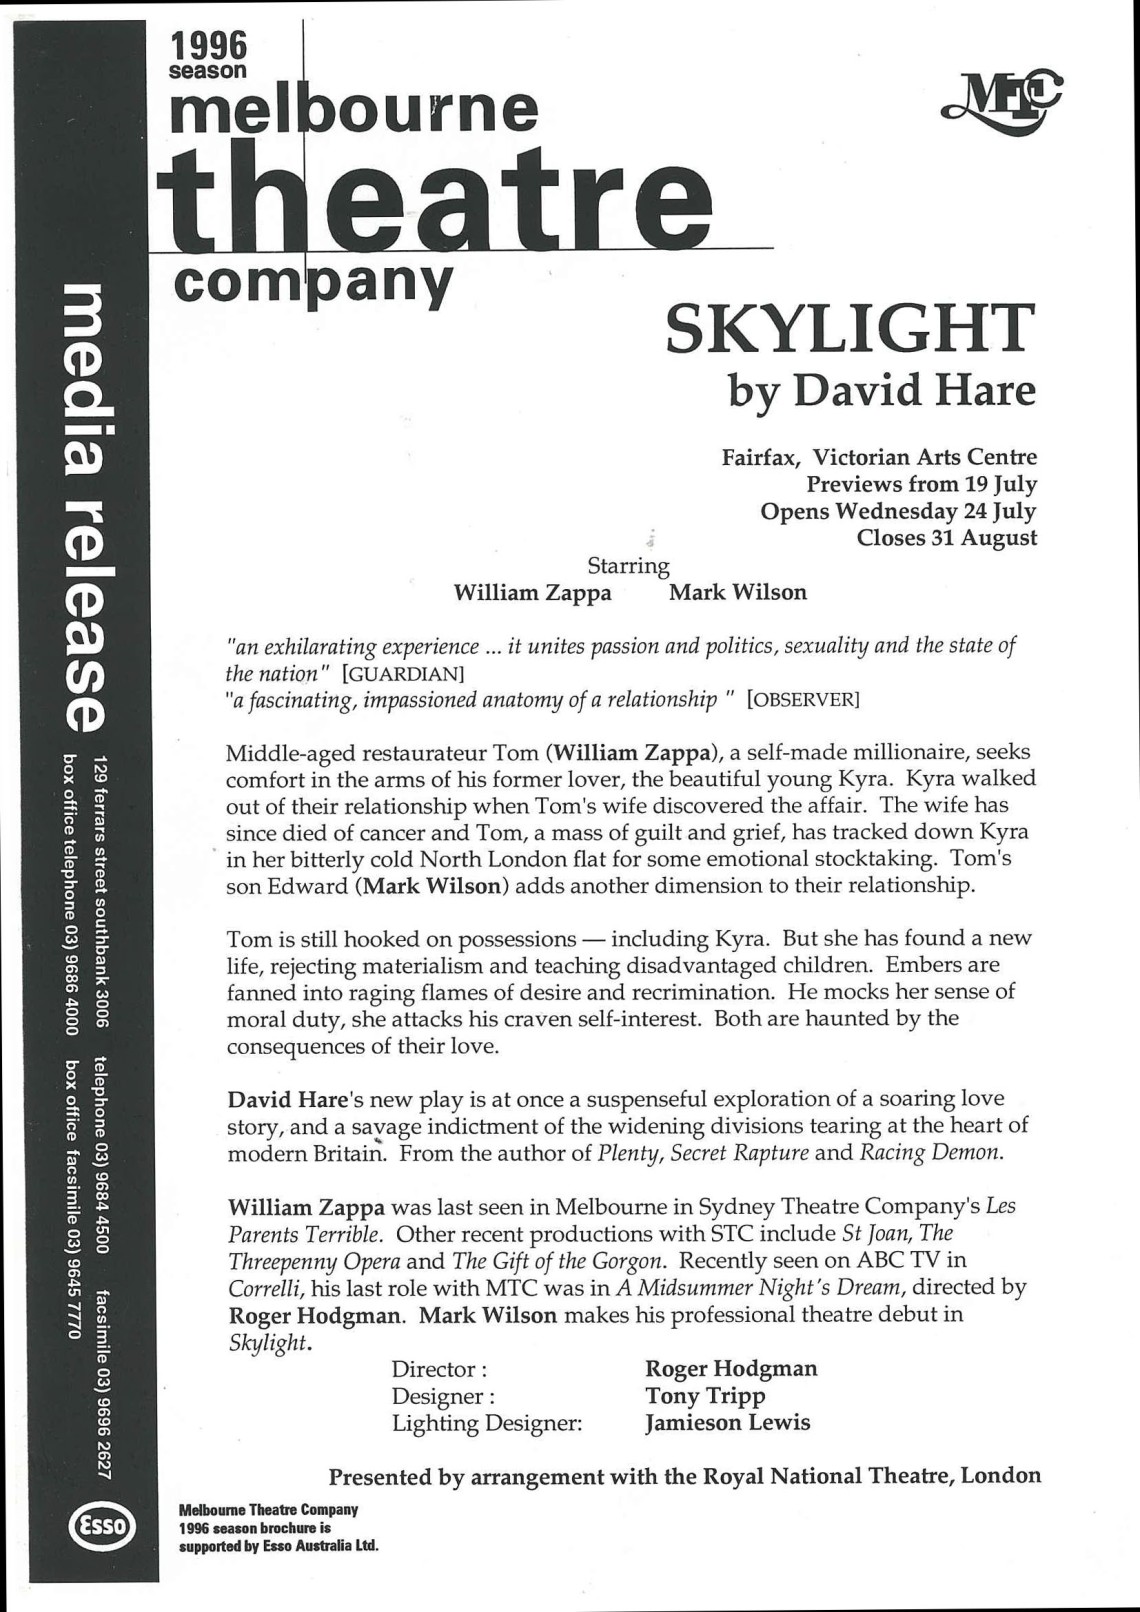 Skylight press release